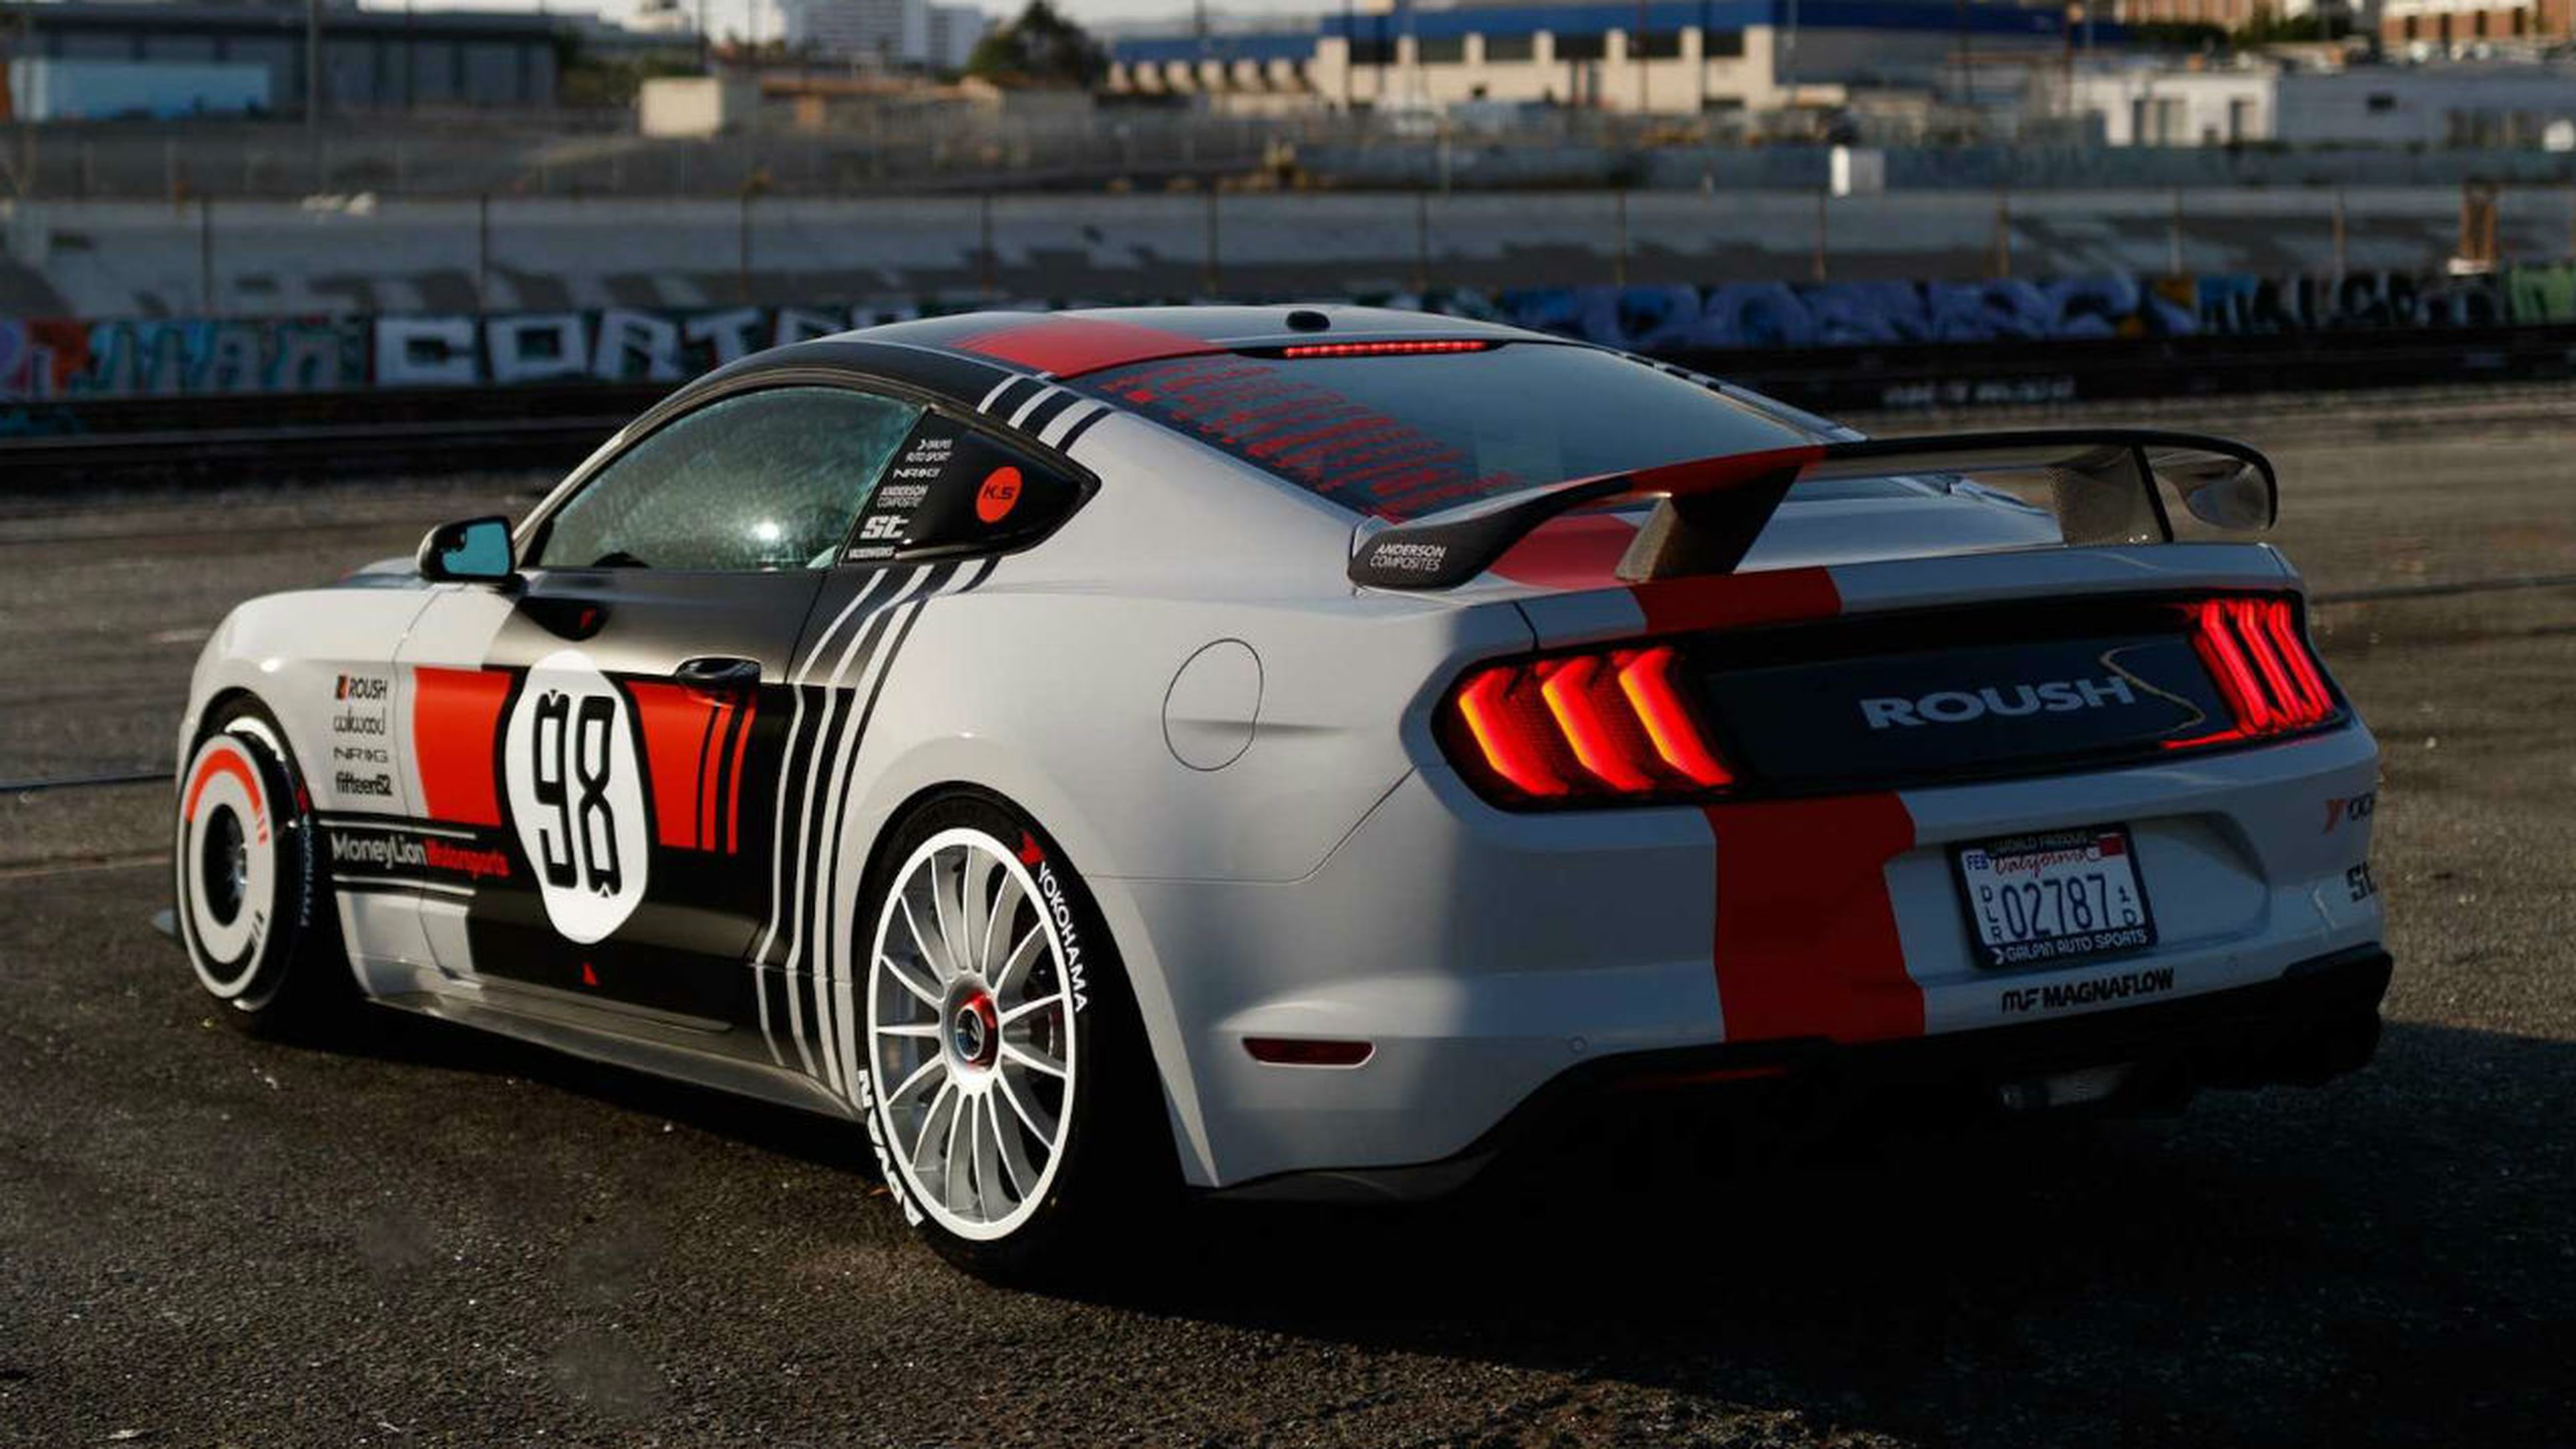 La decoración del Ford Mustang de la imagen tiene historia dentro del mundo de las carreras.